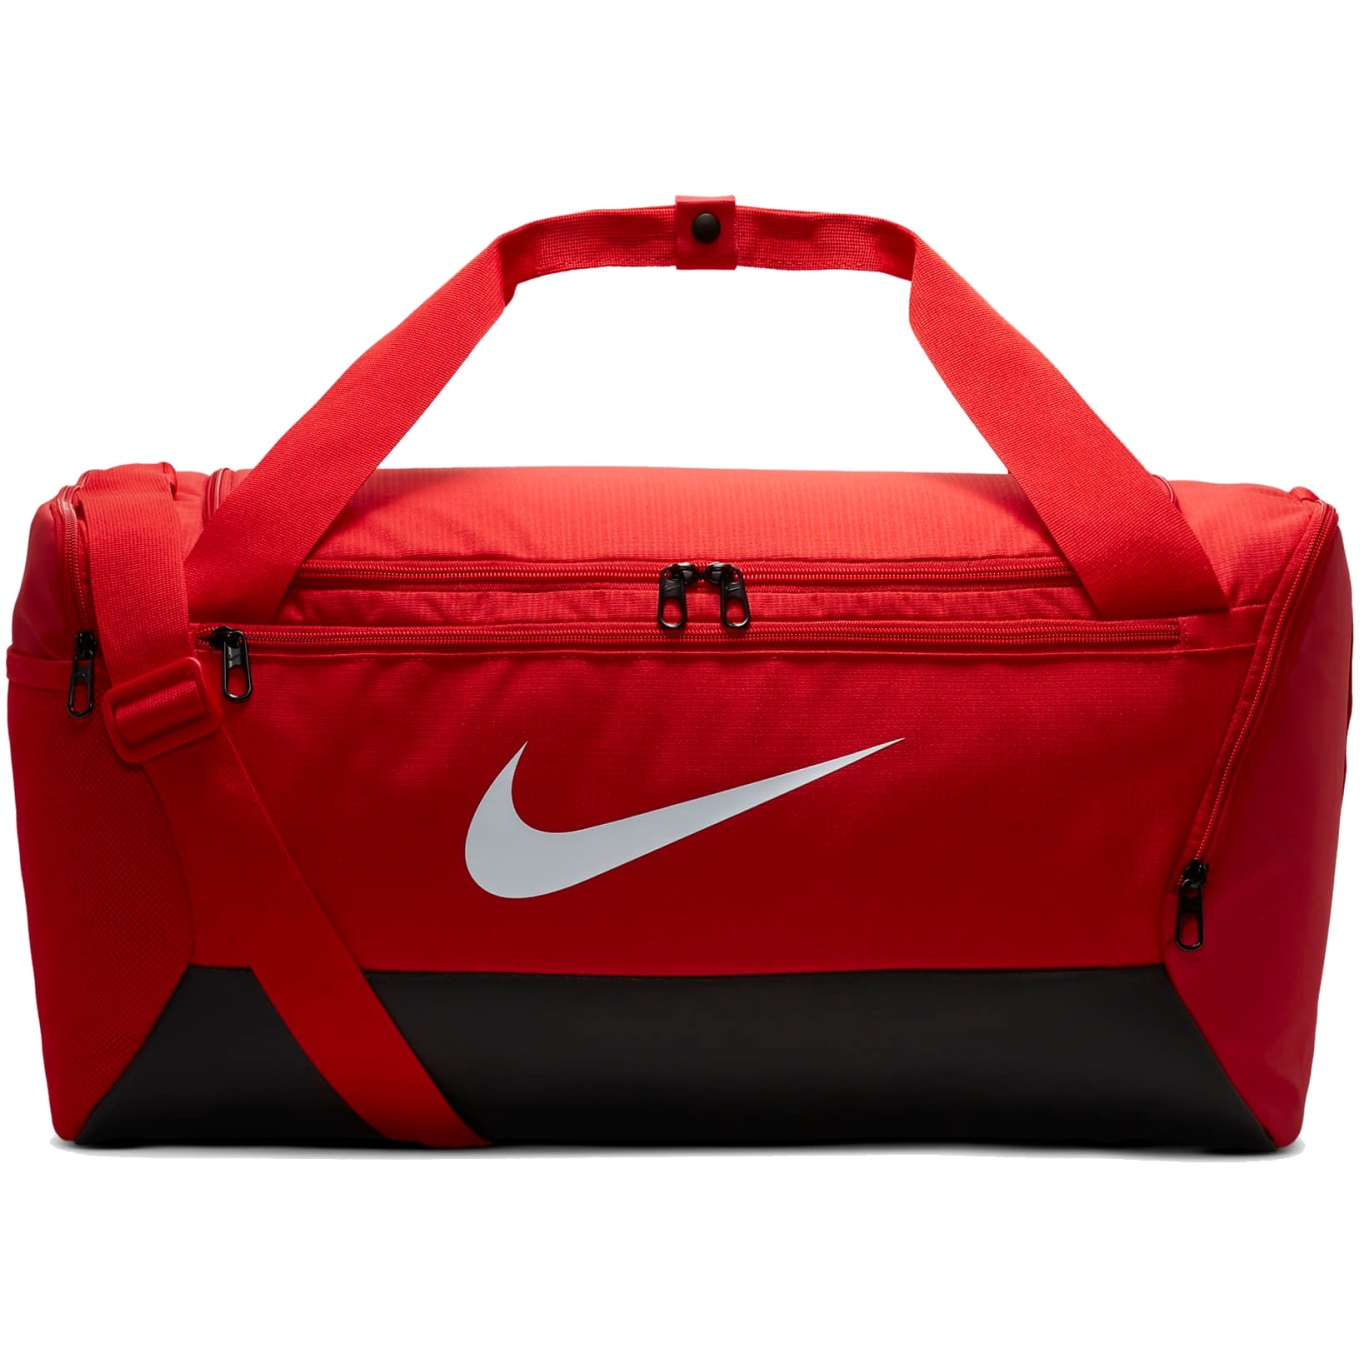 Produktbild von Nike Brasilia 9.5 Sporttasche 41L (Klein) - university red/black/white DM3976-657